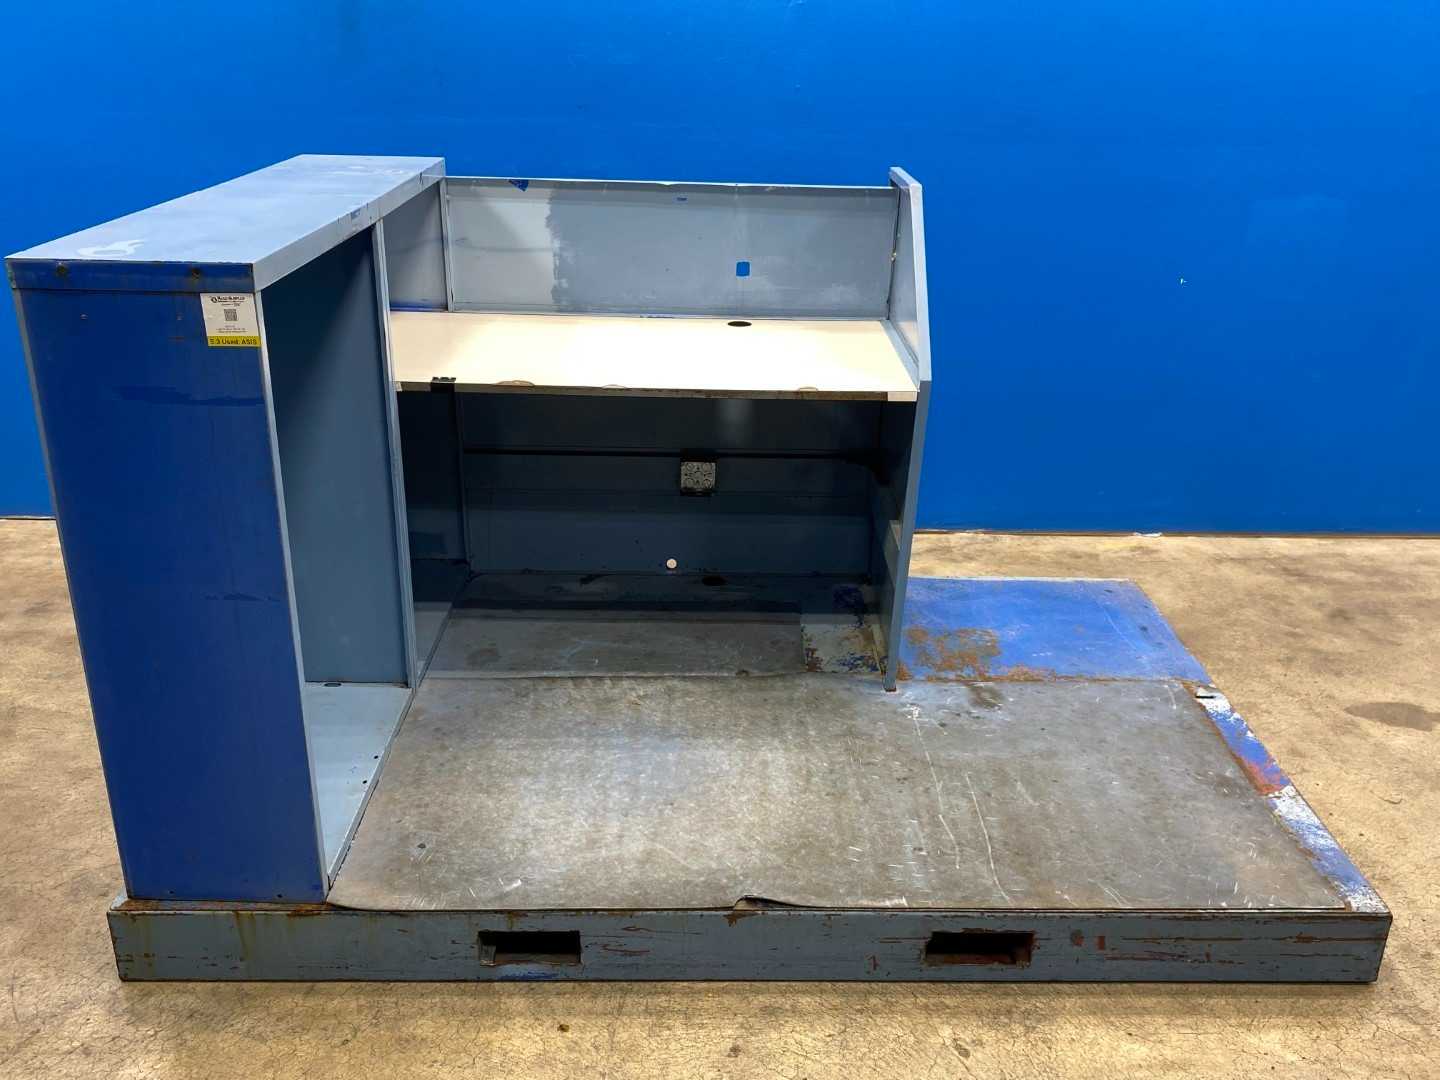 Portable Metal Work Desk (office) w/ Metal Platform Forklift Holes for transit